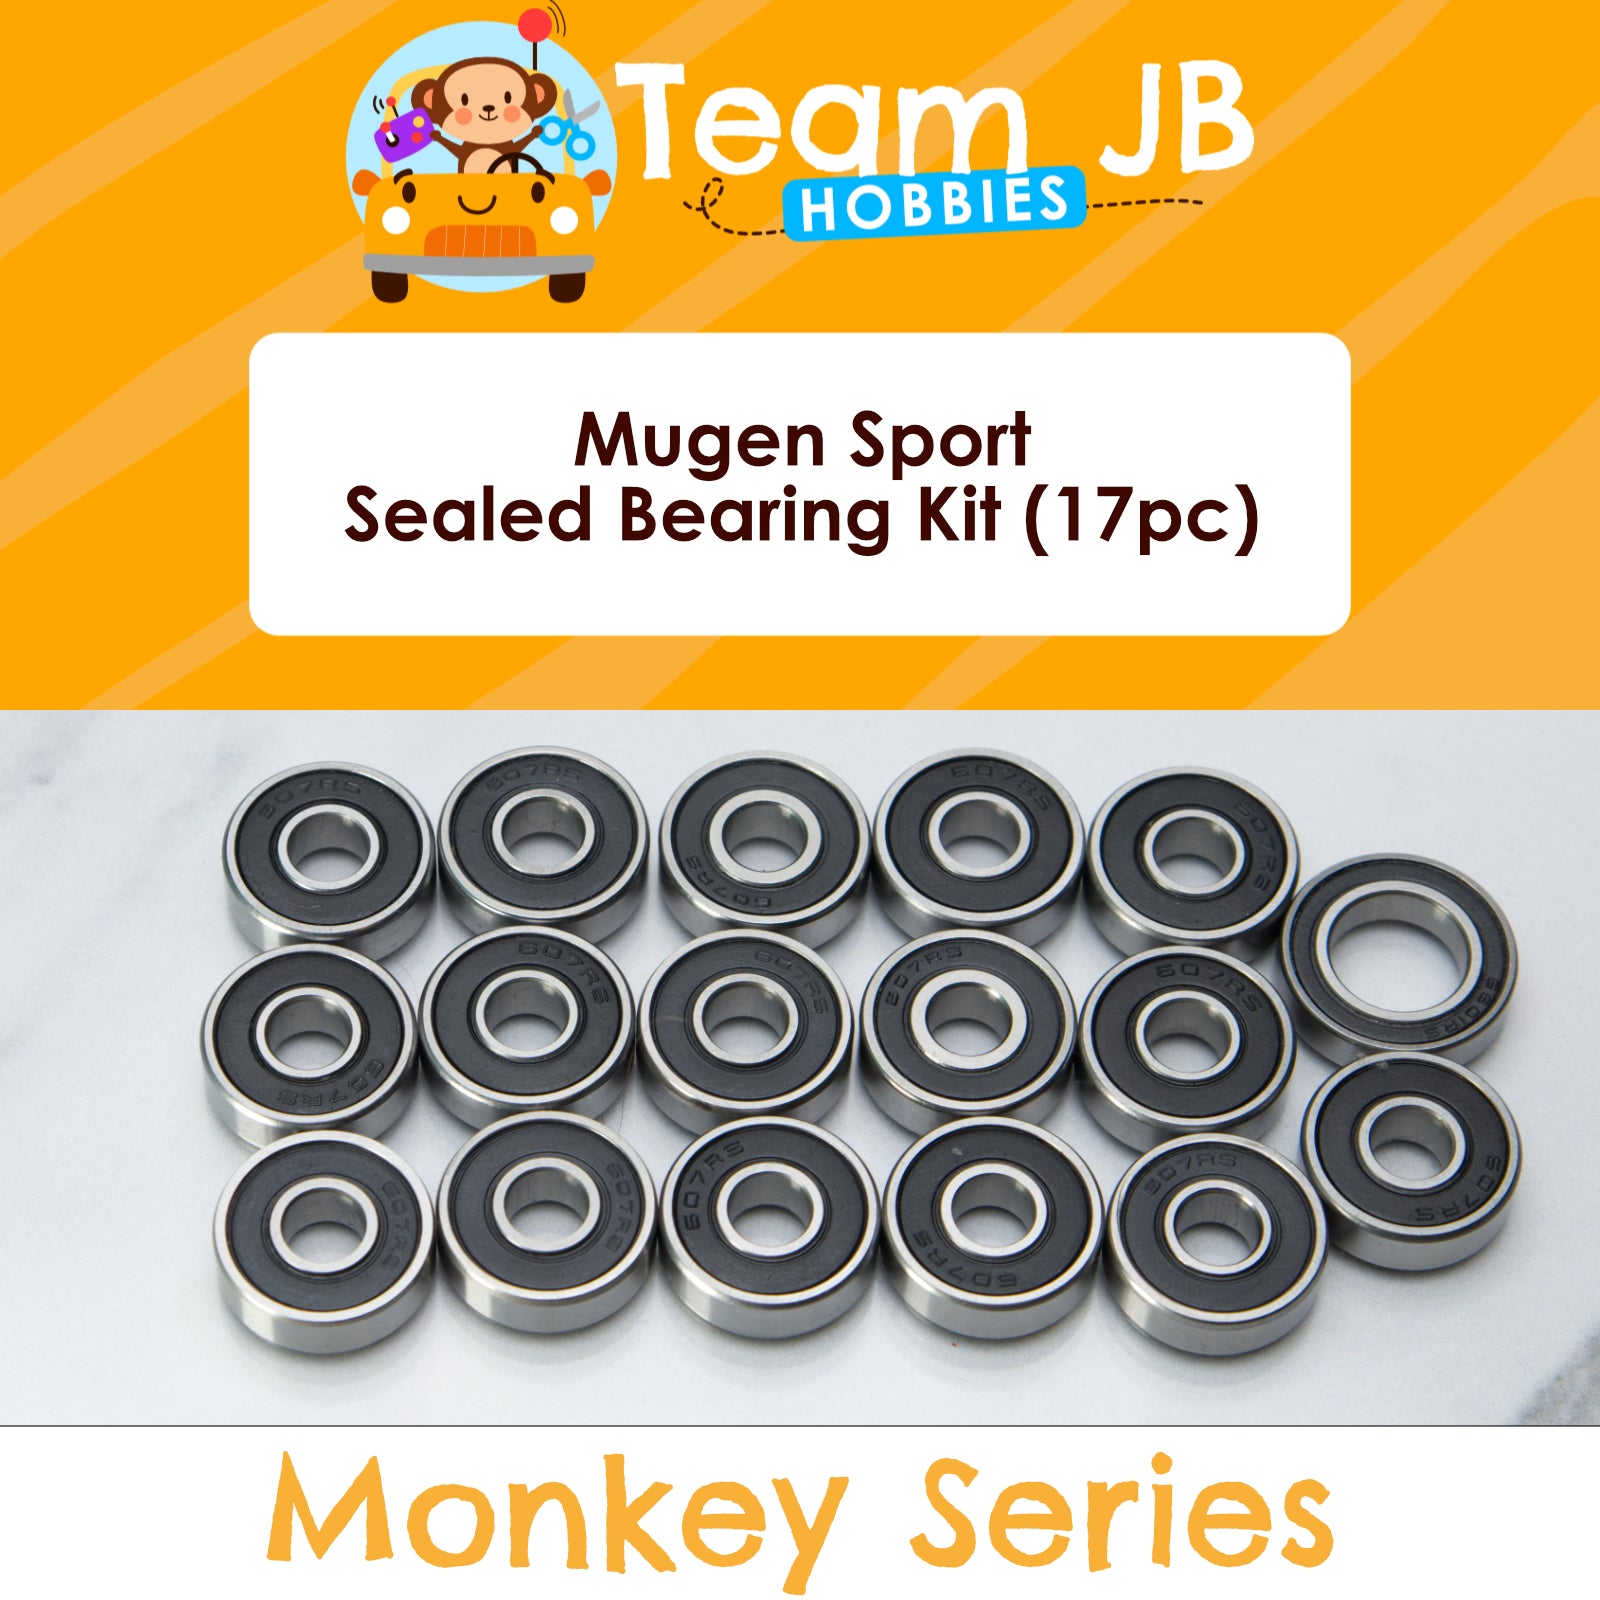 Mugen Sport - Sealed Bearing Kit